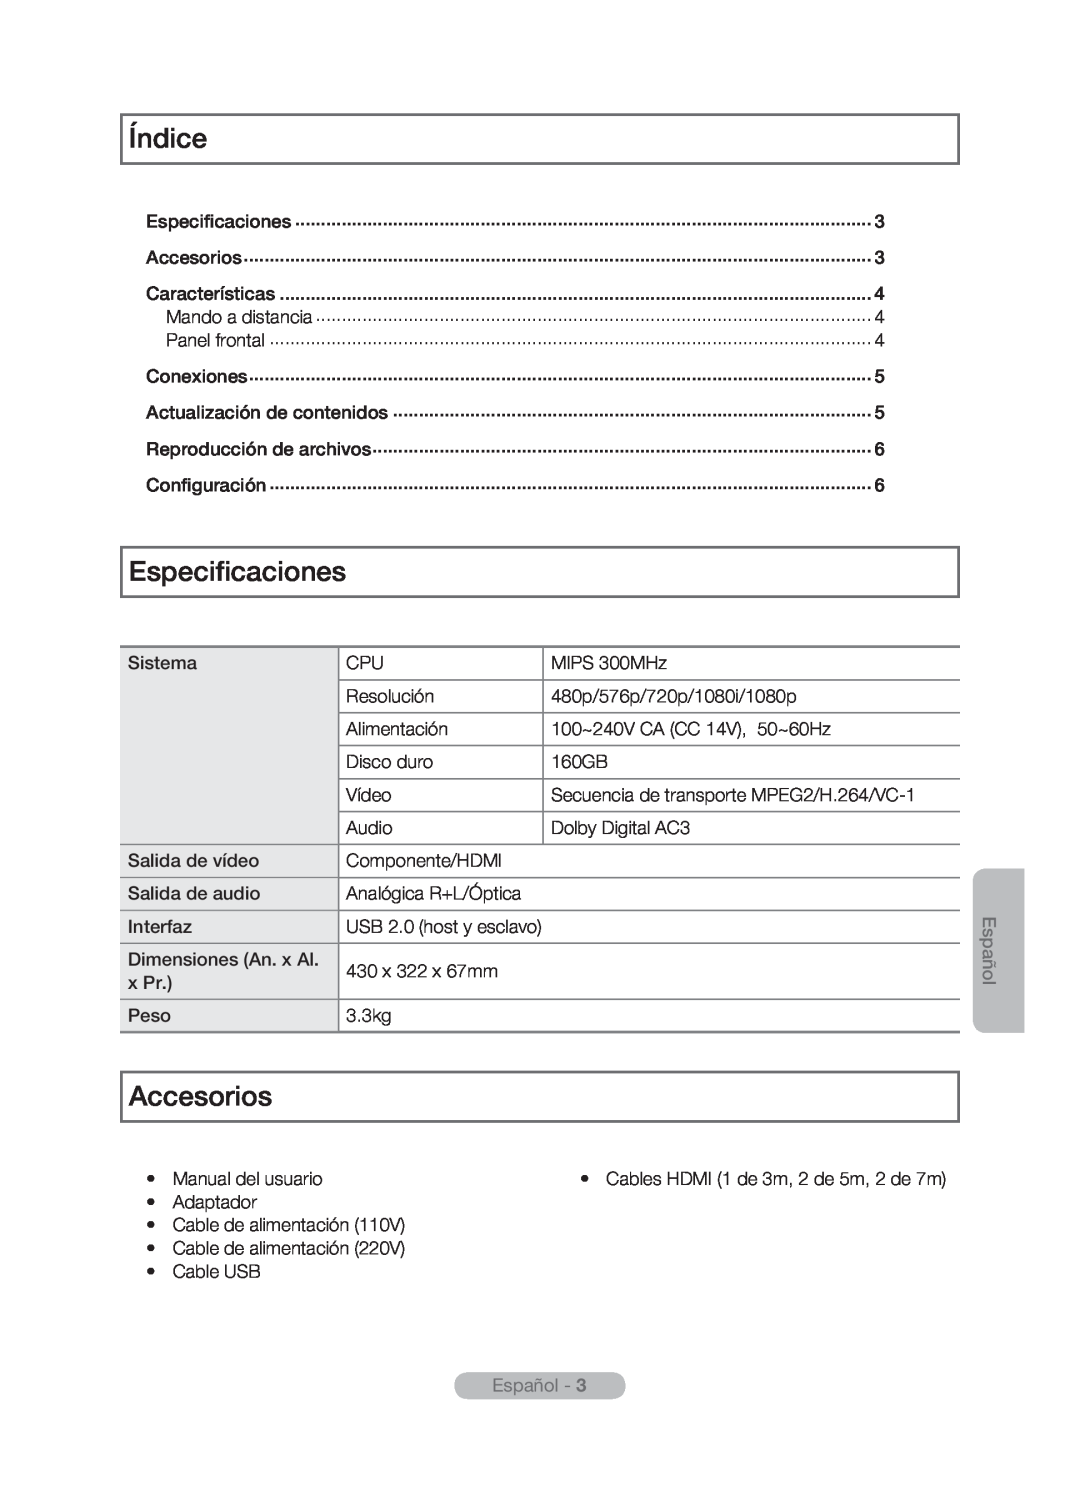 Samsung MR-16SB2 manual Índice, Especificaciones, Accesorios, Español -  